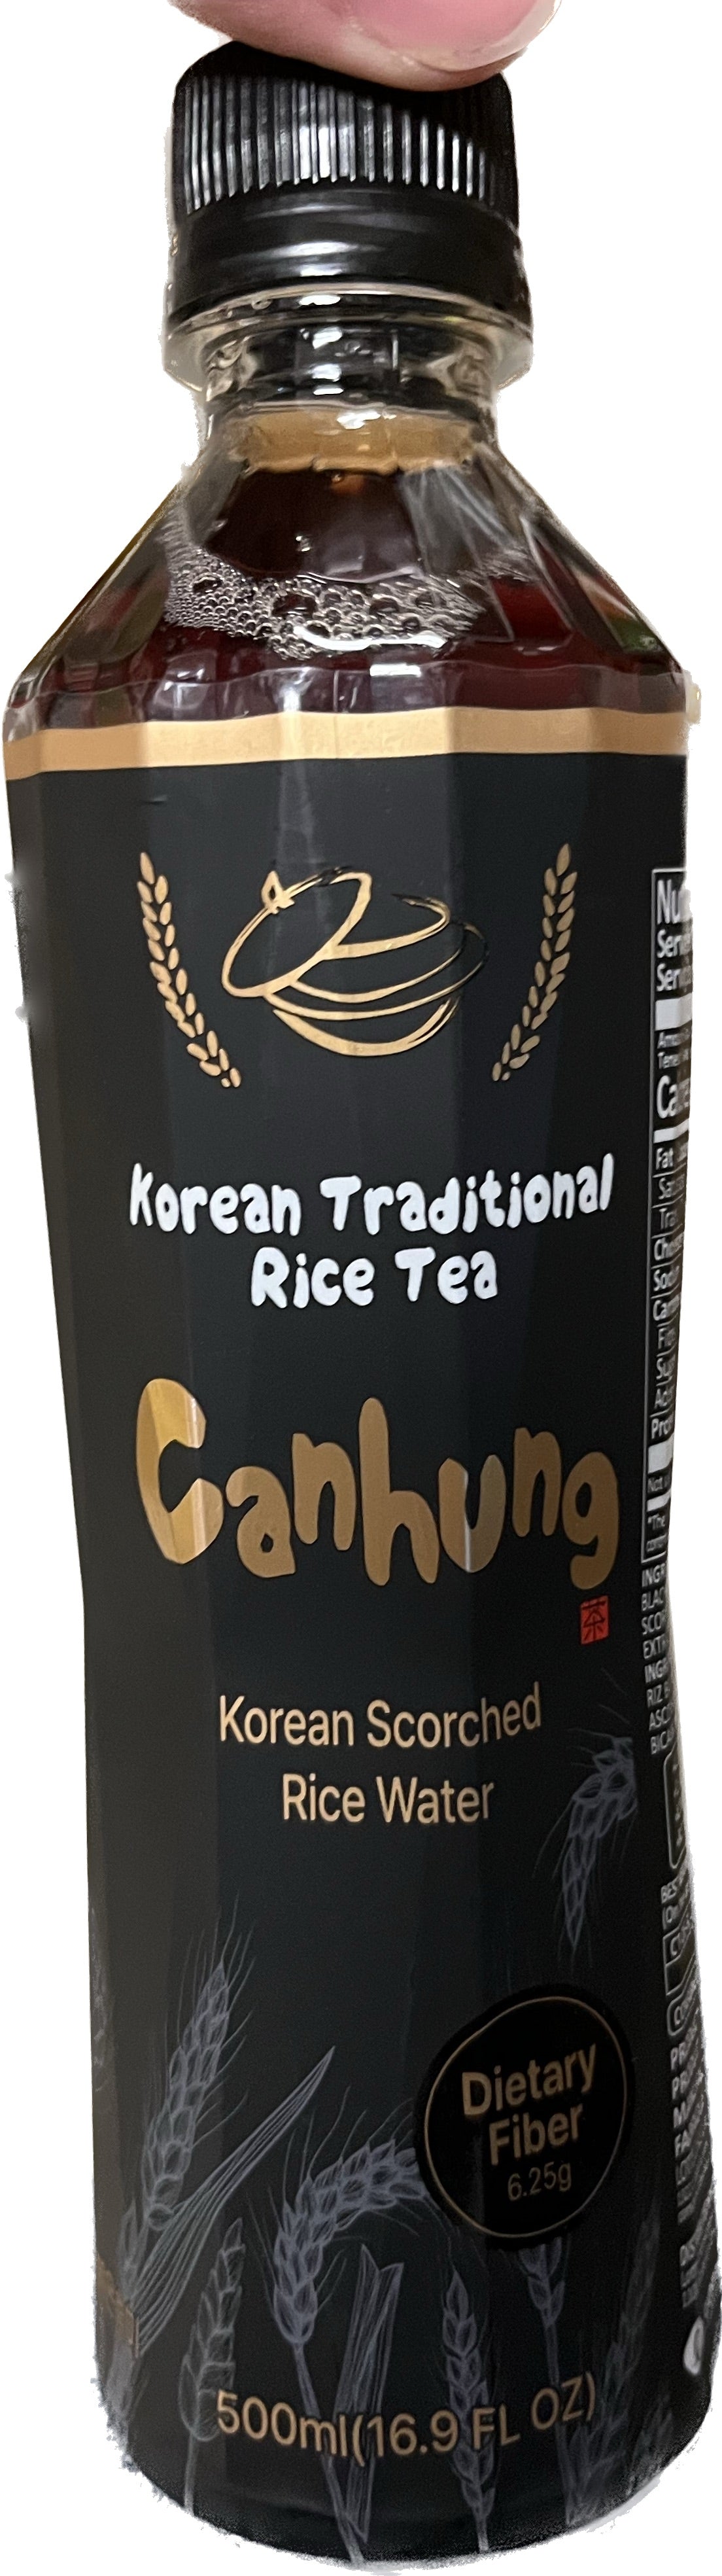 Té de arroz tradicional coreano Canhung